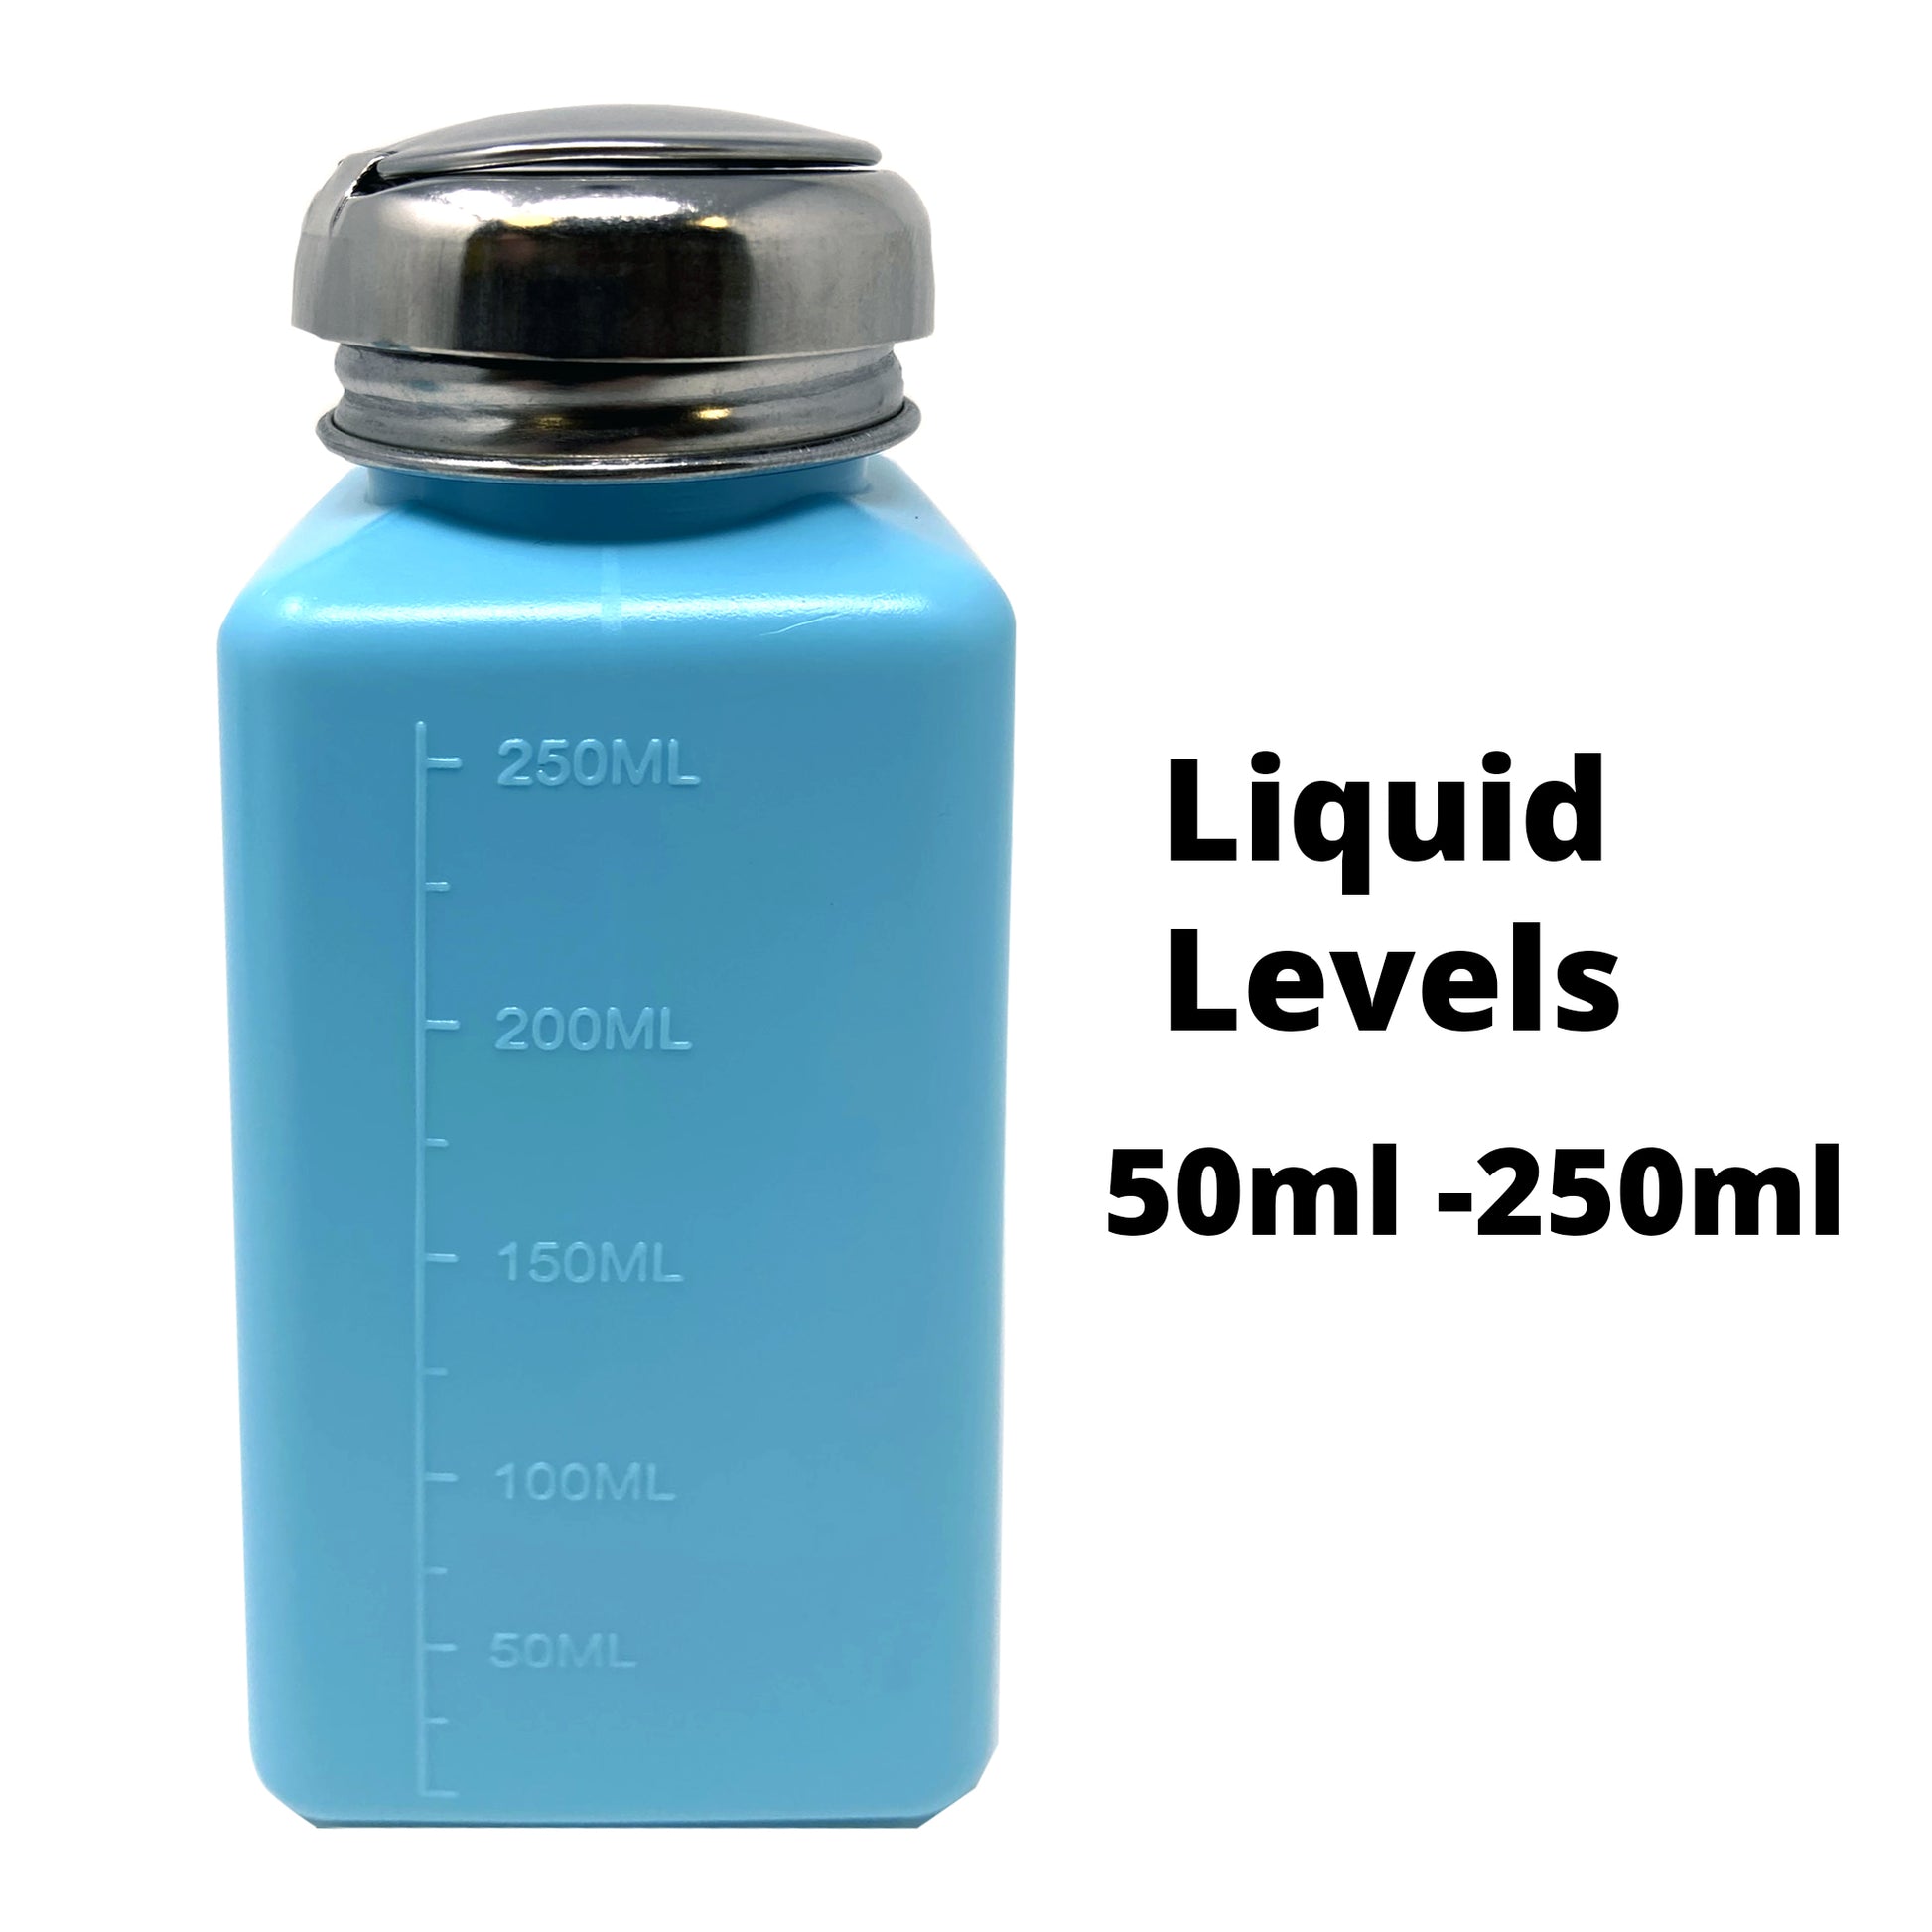 6oz Anti-Static ESD Safe Dispenser Liquid Levels